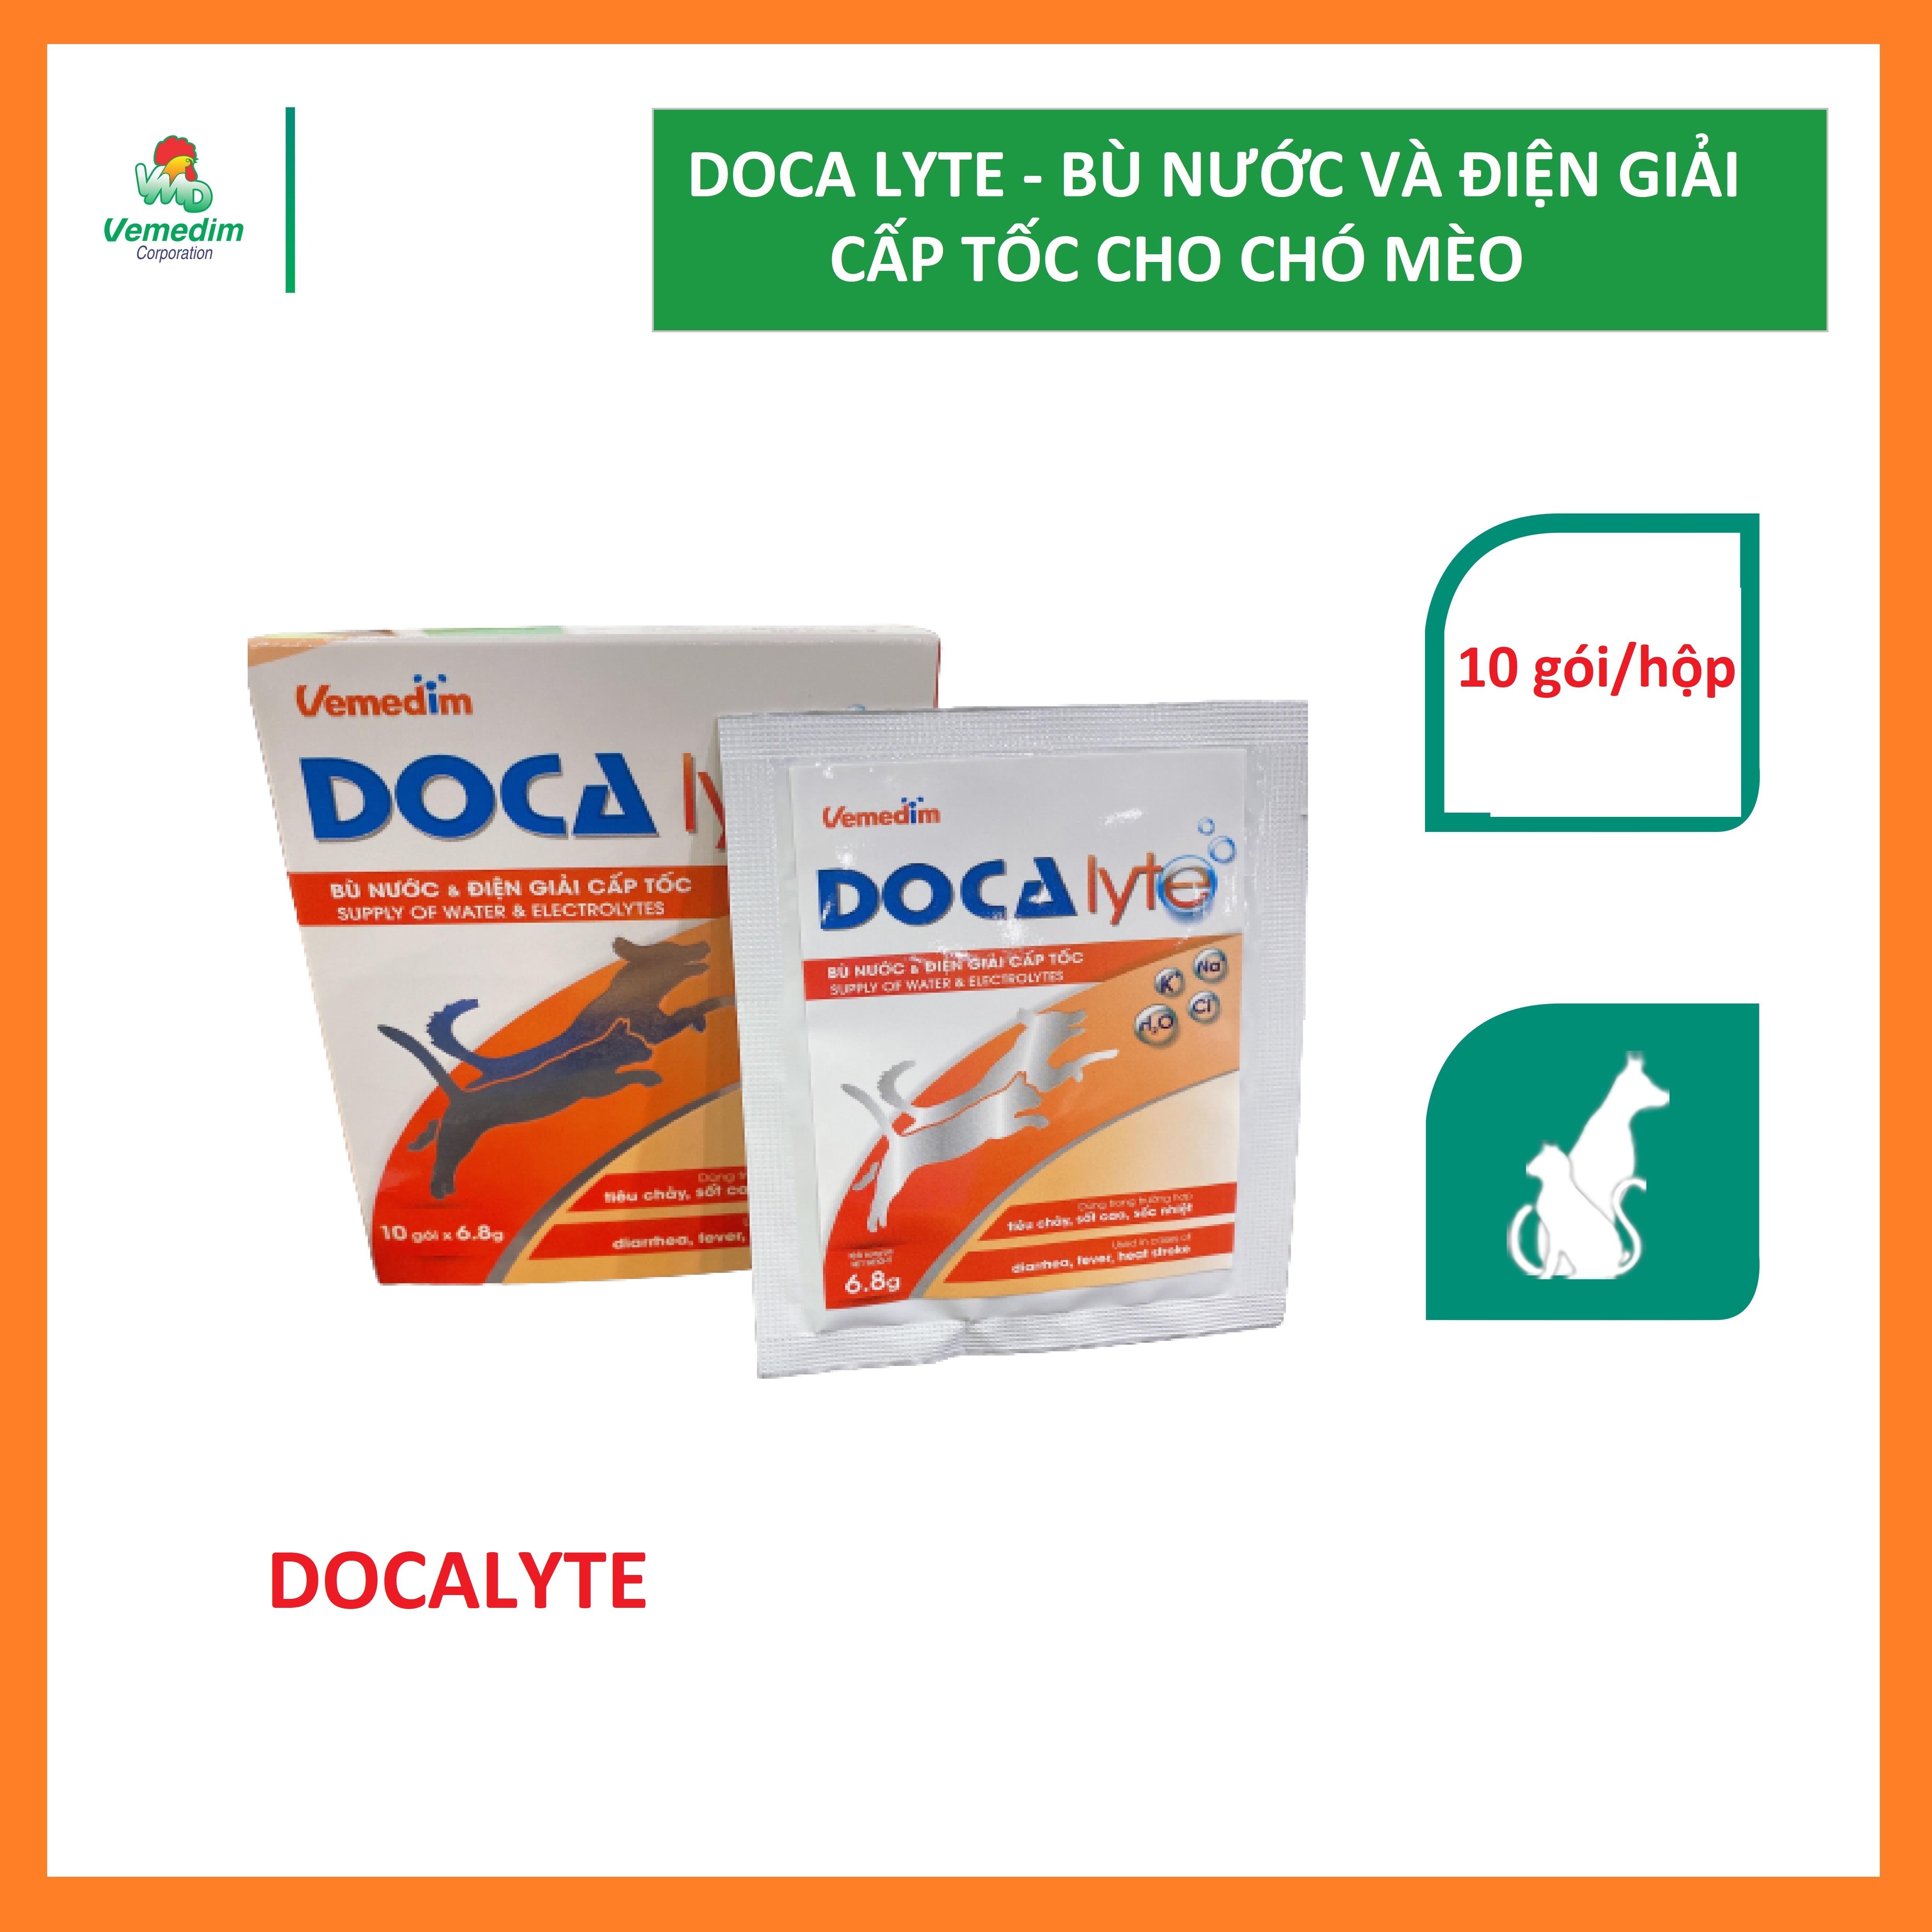 Vemedim Docalyte bột pha nước uống bổ sung cấp tốc các ion điện giải, glucose và glycine, bù nước cho chó mèo, gói 6.8g